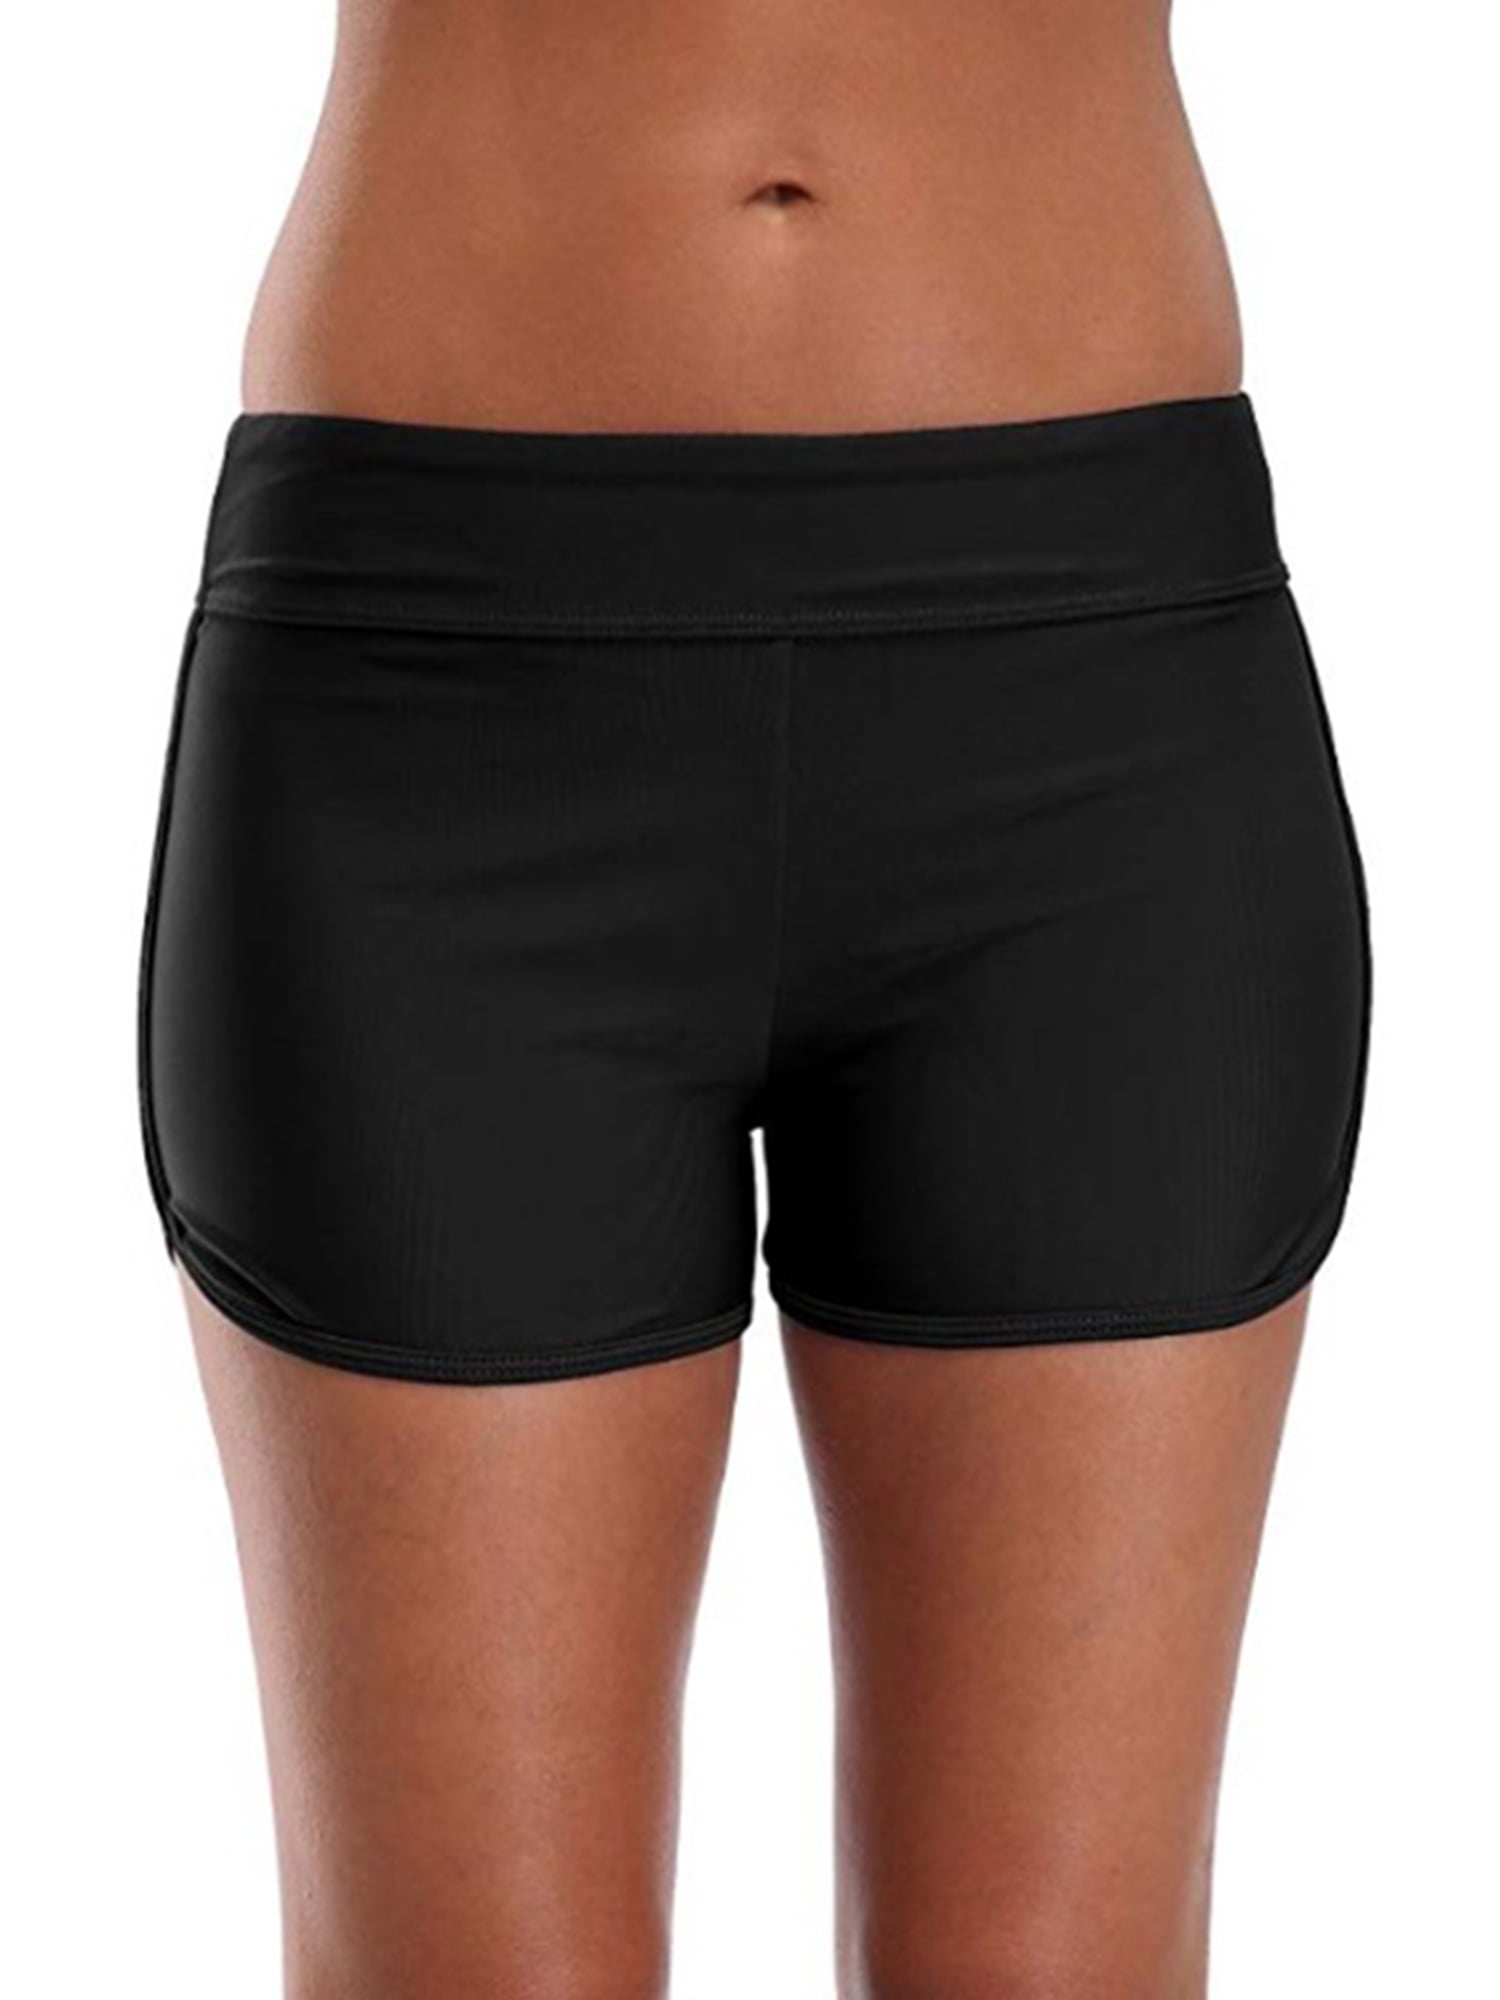 Women High Waist Swim Boy Shorts Briefs Bikini Bottom Tankini Shorts ...